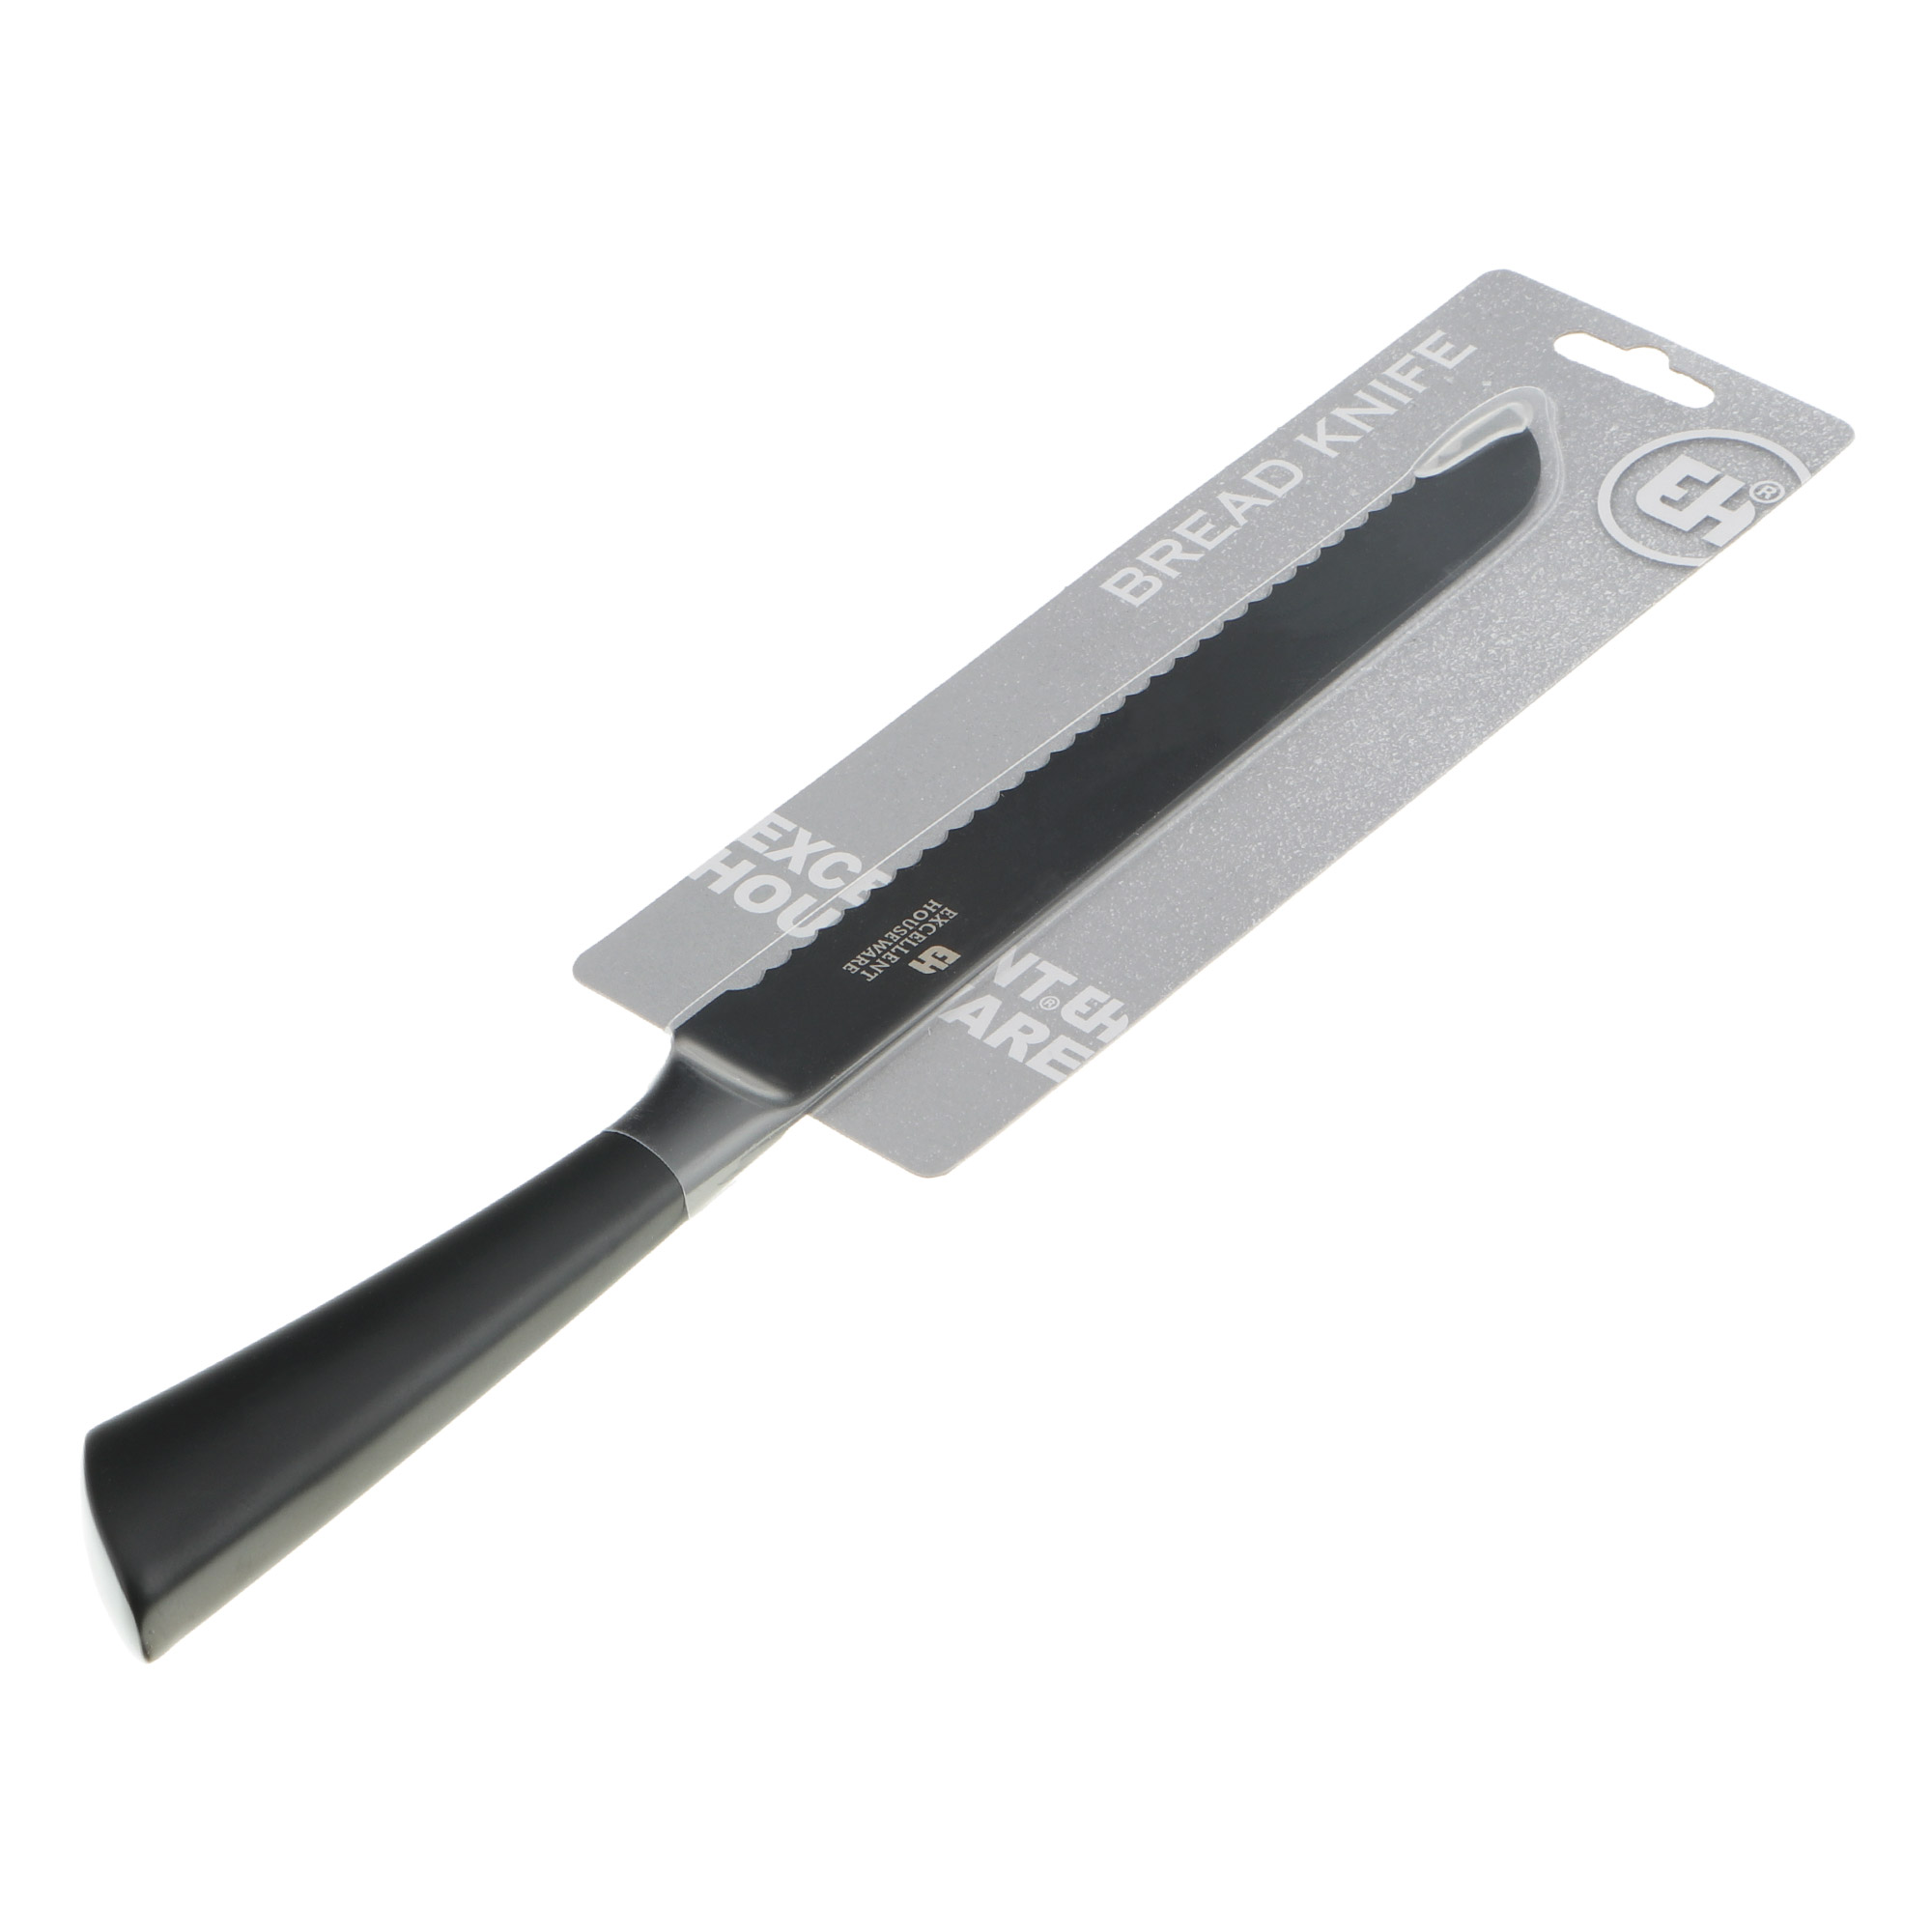 Нож для хлеба Koopman tableware 33 см черный нож разделочный koopman tableware 33 см